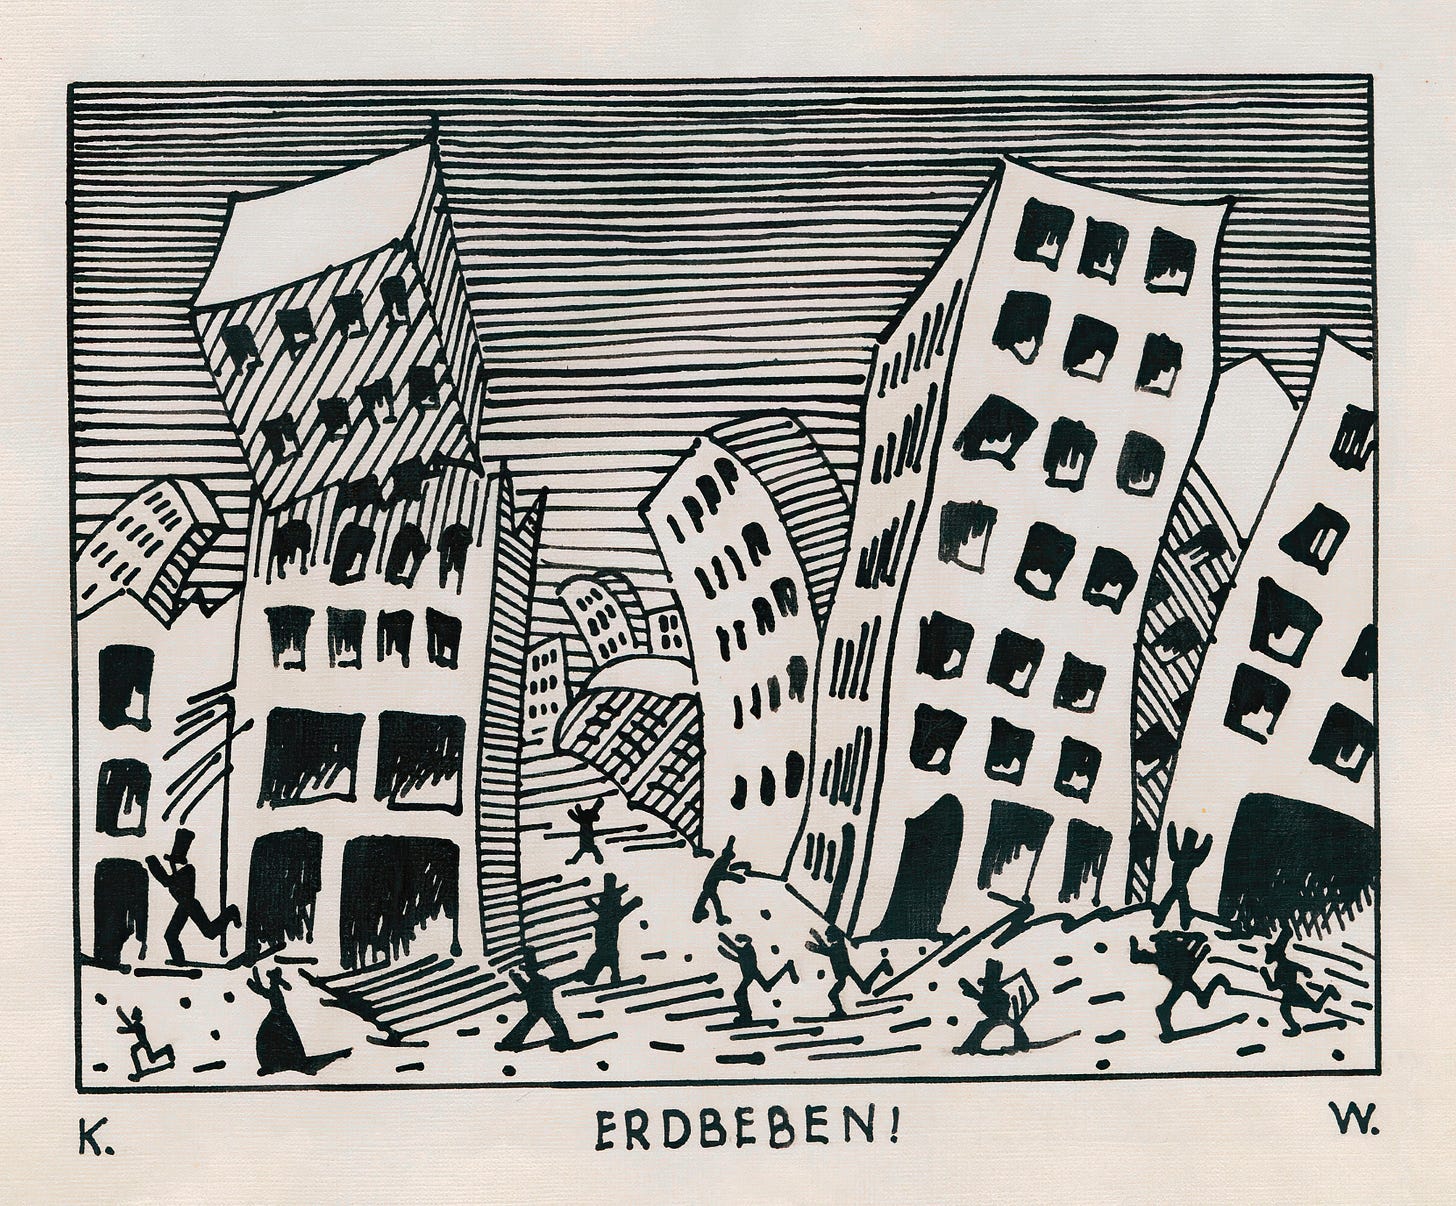 Erdbeben (around 1922)by Karl Wiener